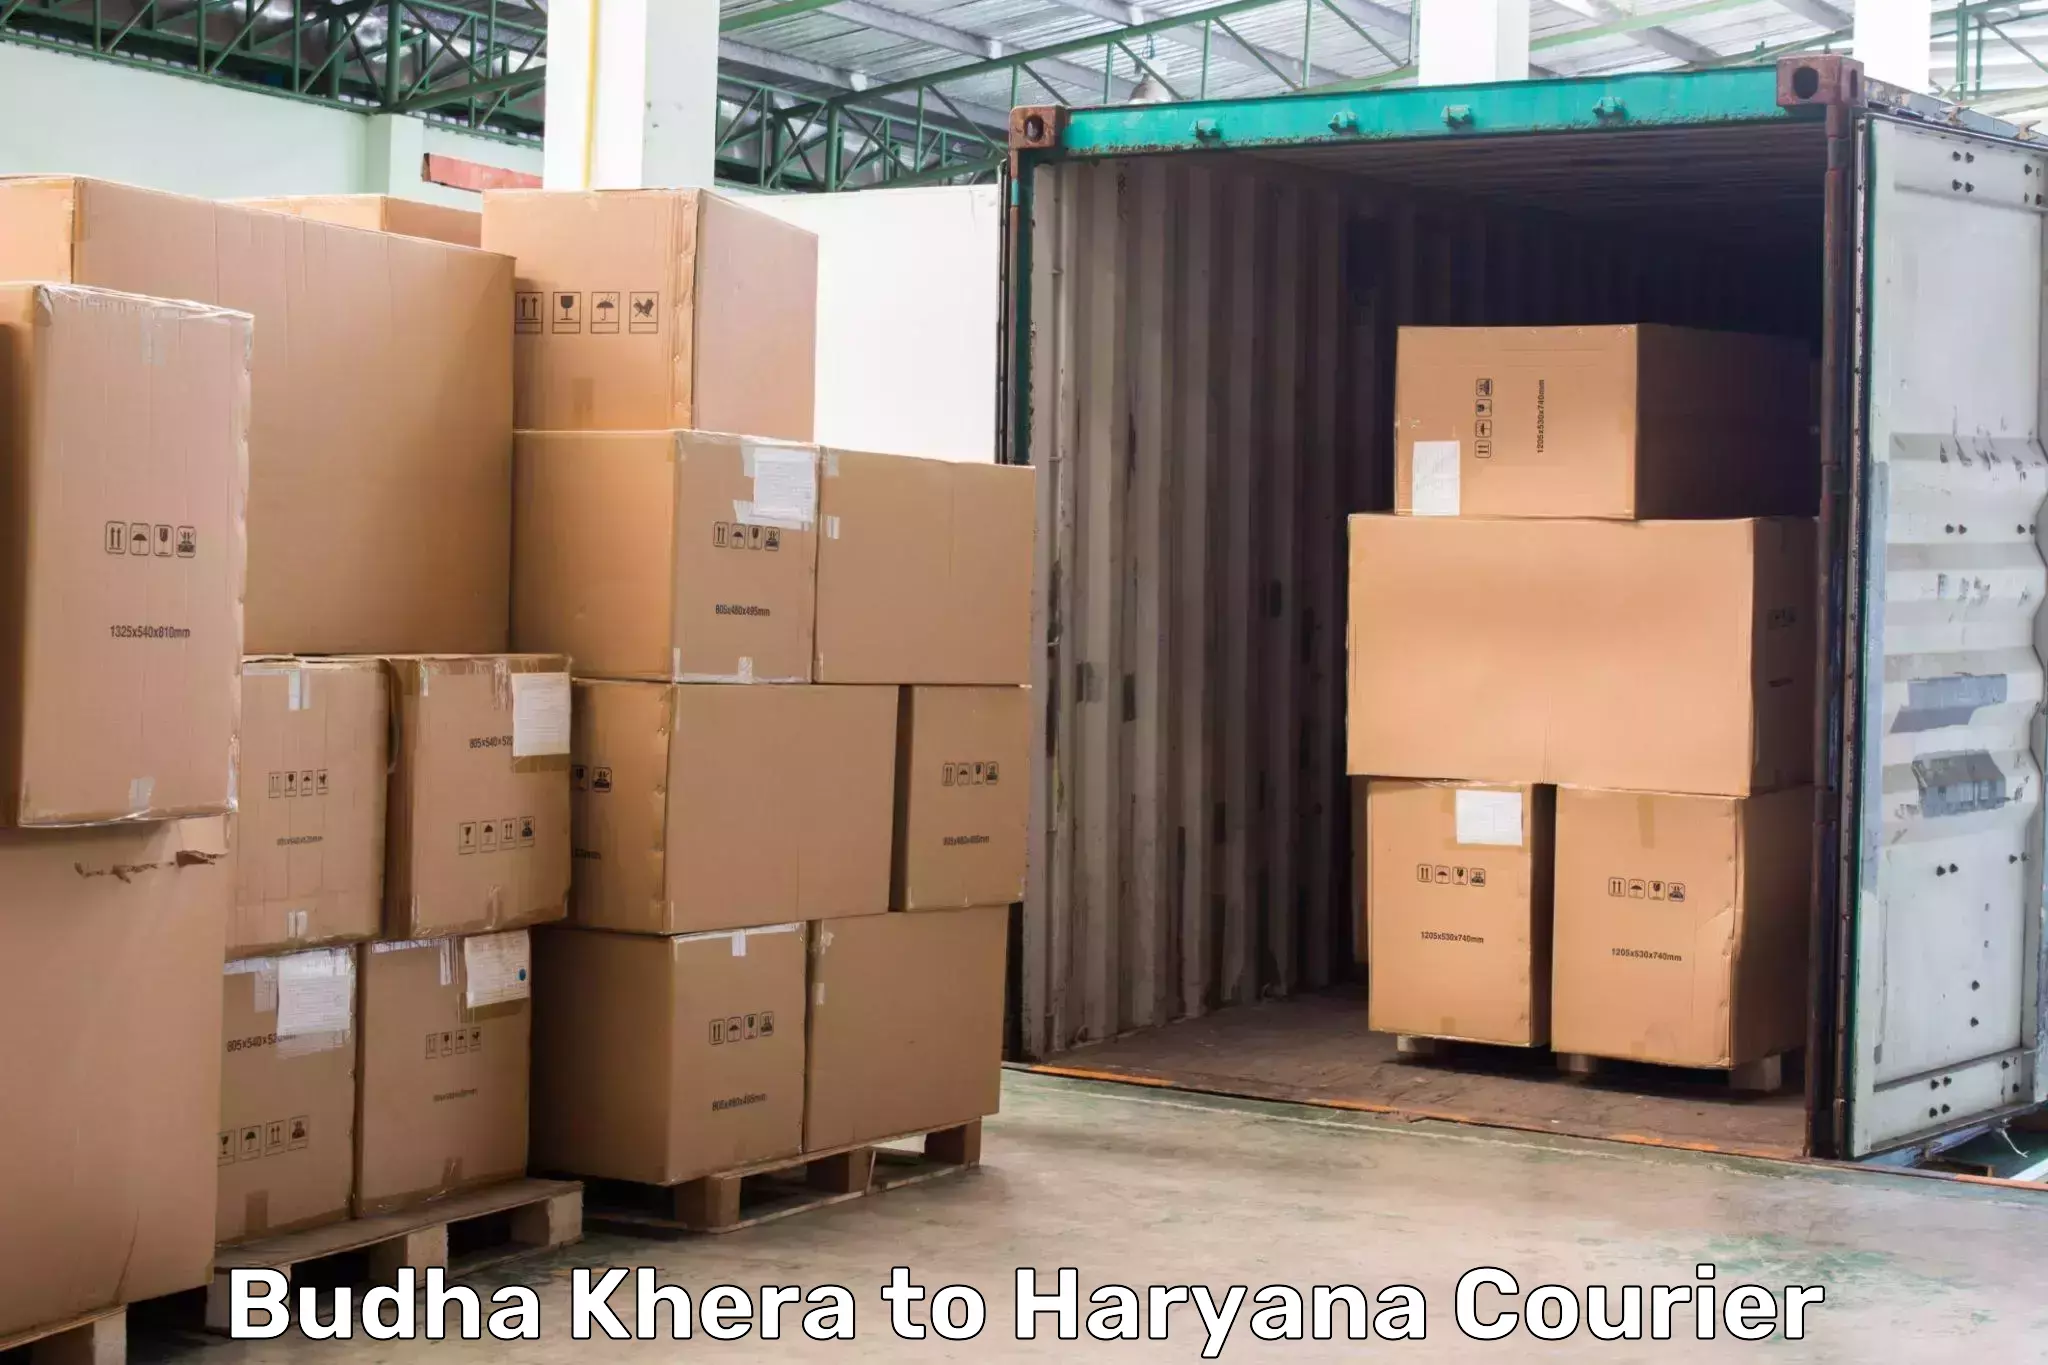 International parcel service Budha Khera to Chaudhary Charan Singh Haryana Agricultural University Hisar